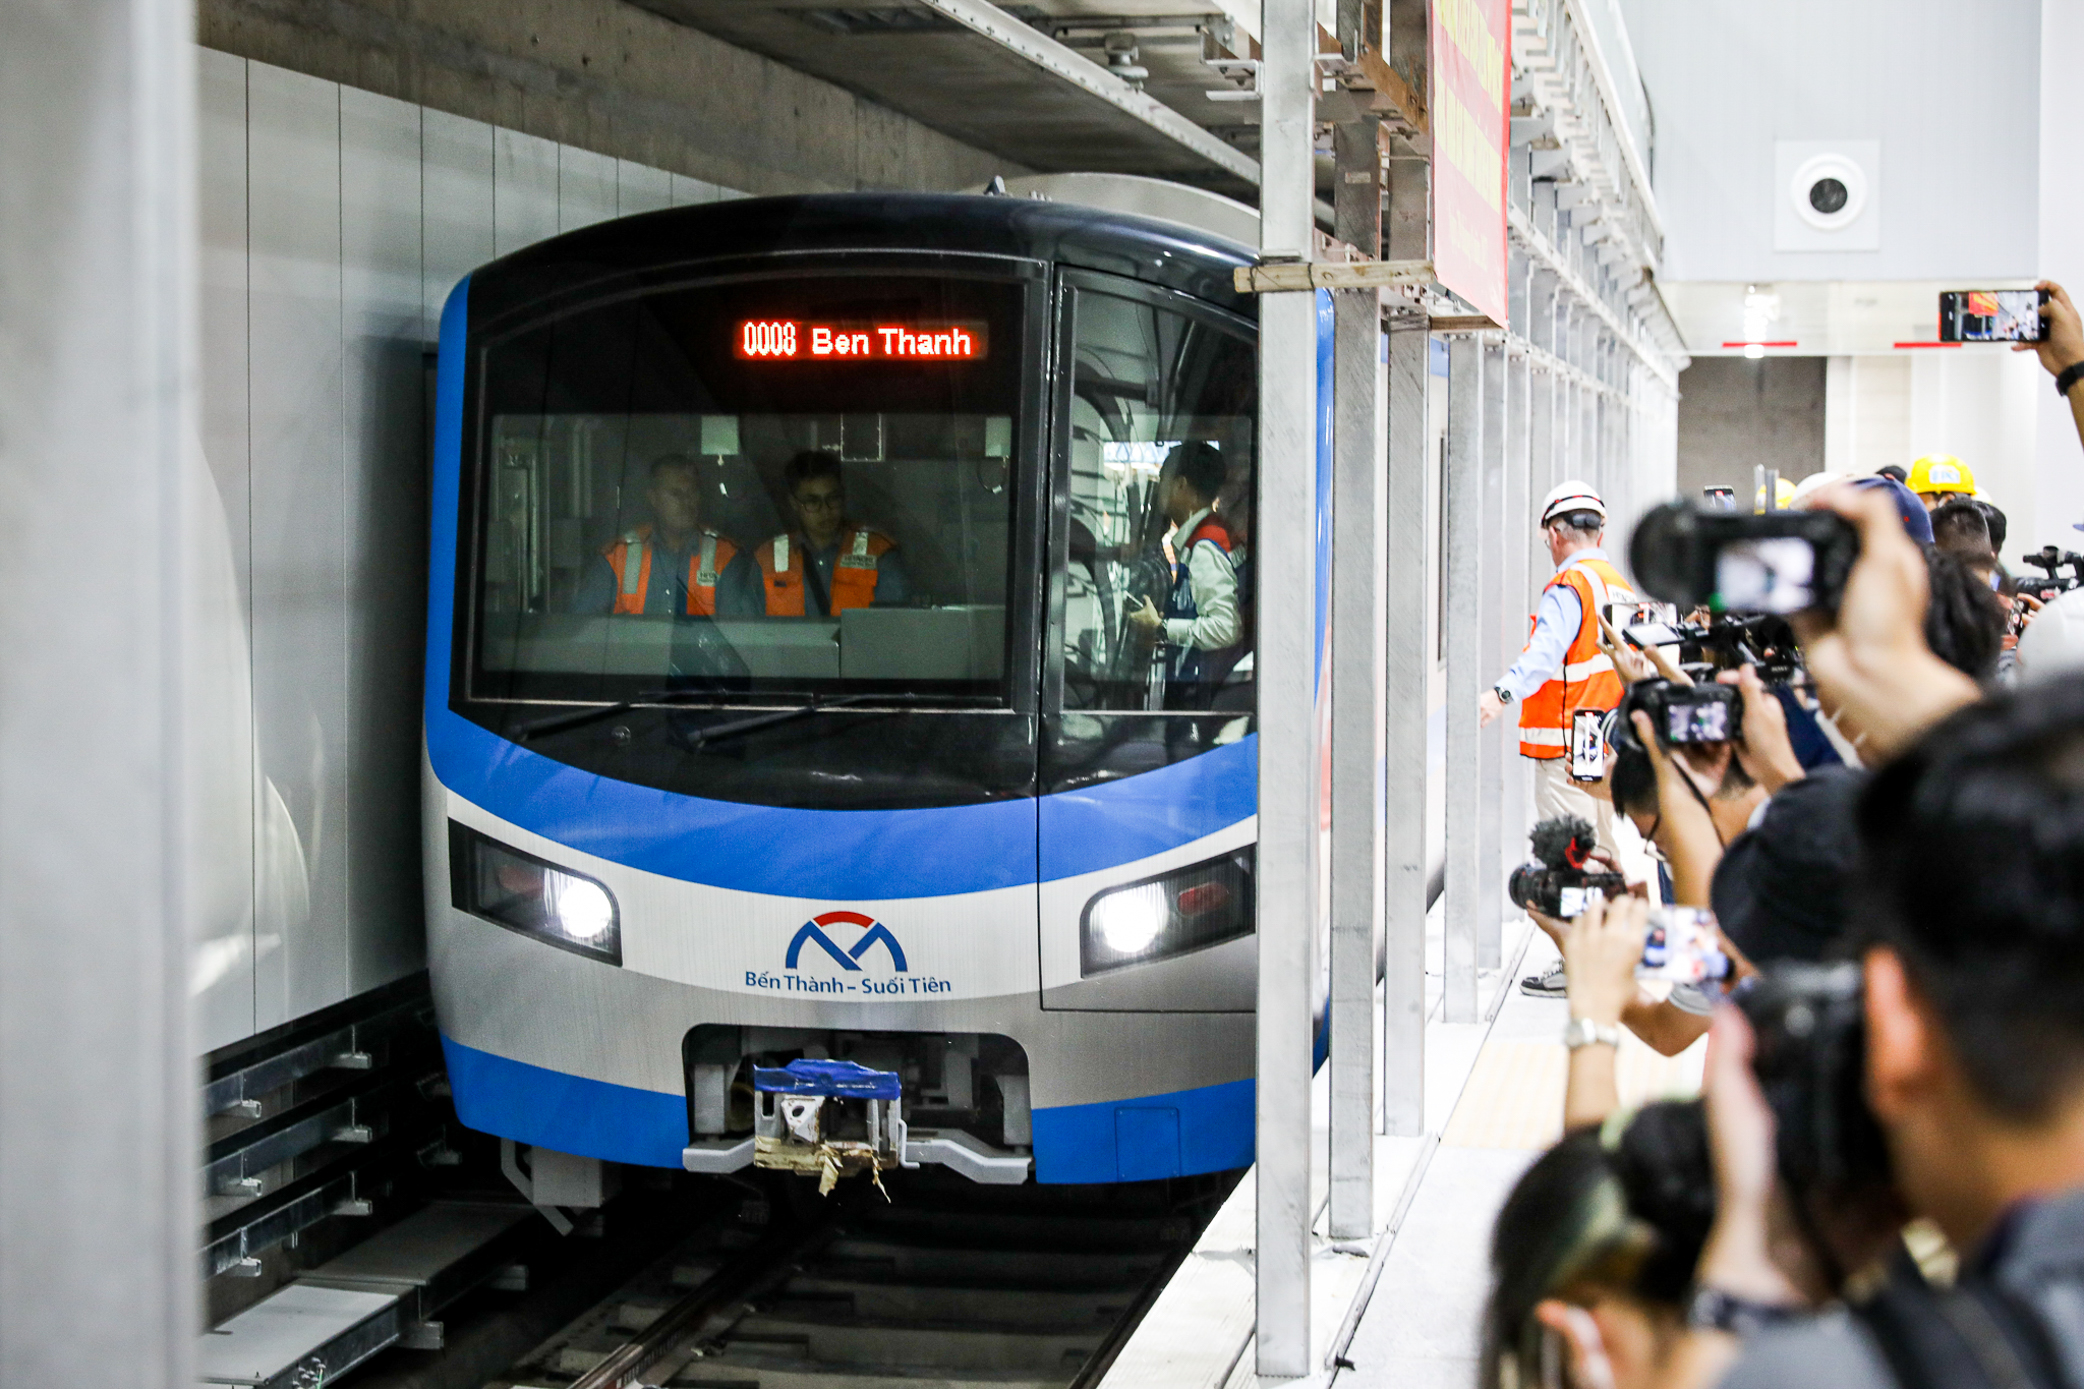 Hiện trạng khu vực đang được xây dựng tuyến metro dài 11 km, trị giá 2 tỷ USD, nối trung tâm TP. HCM với khu vực gần sân bay Tân Sơn Nhất- Ảnh 1.